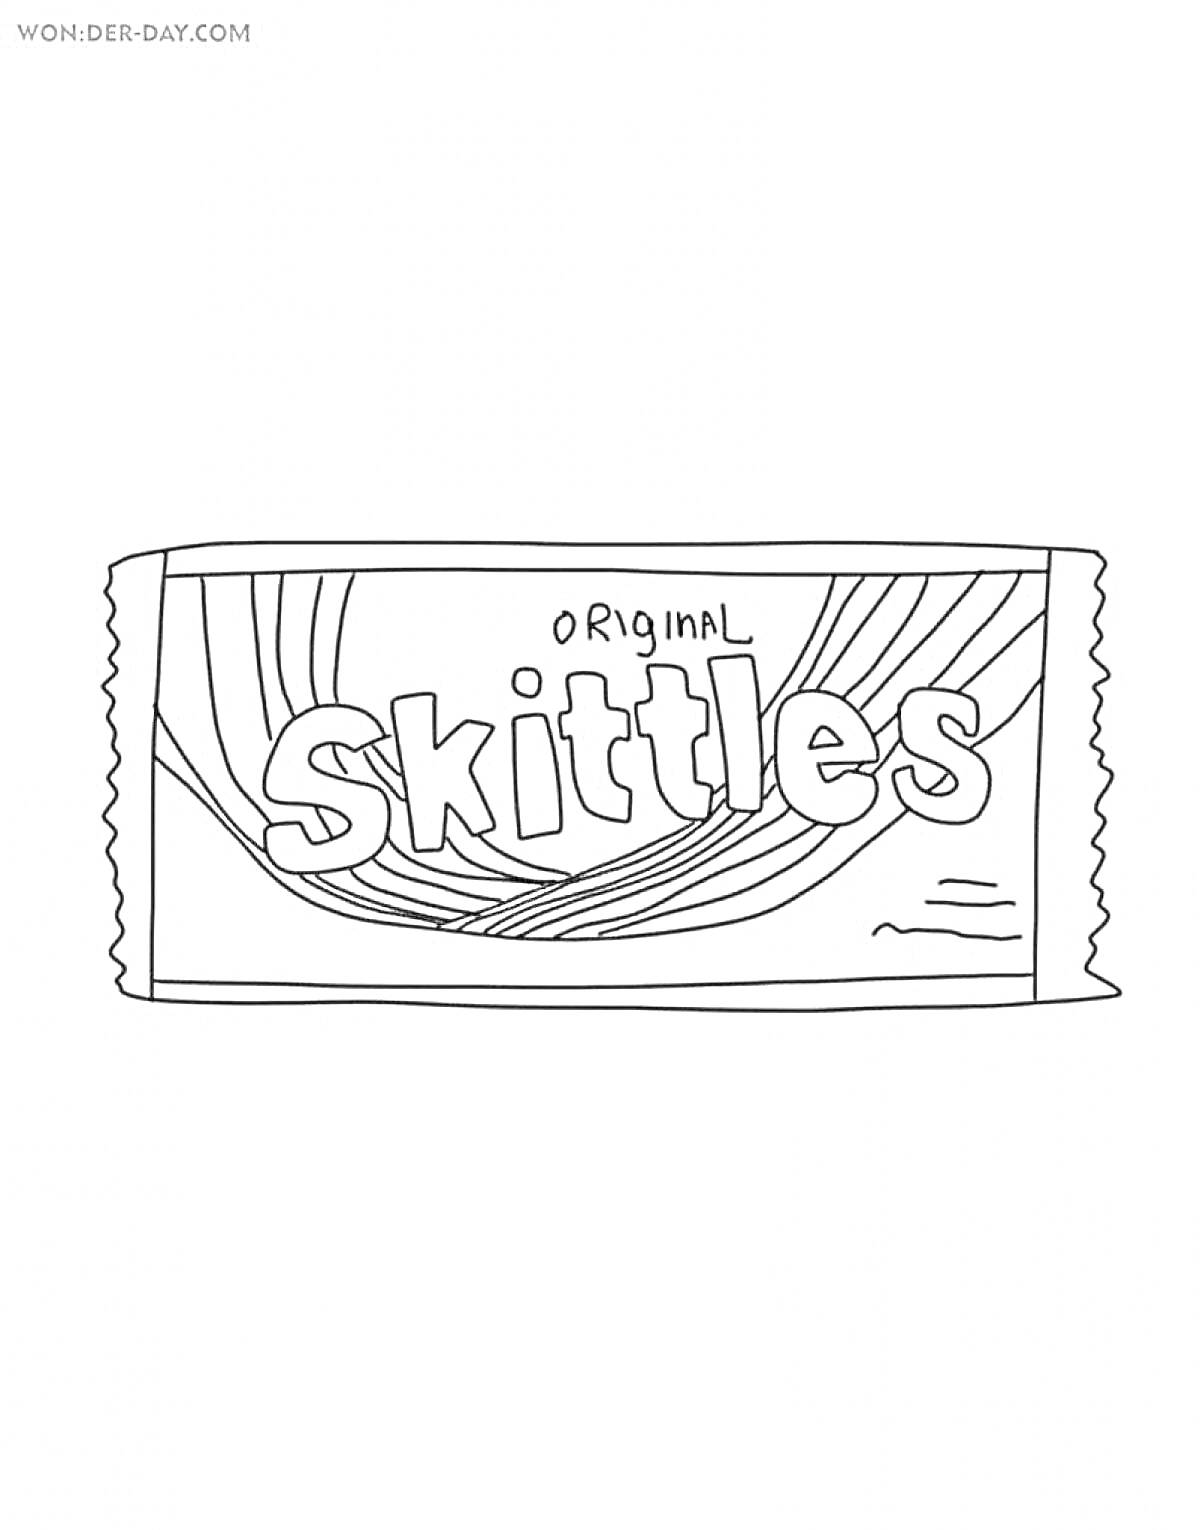 Упаковка Skittles с надписью Original